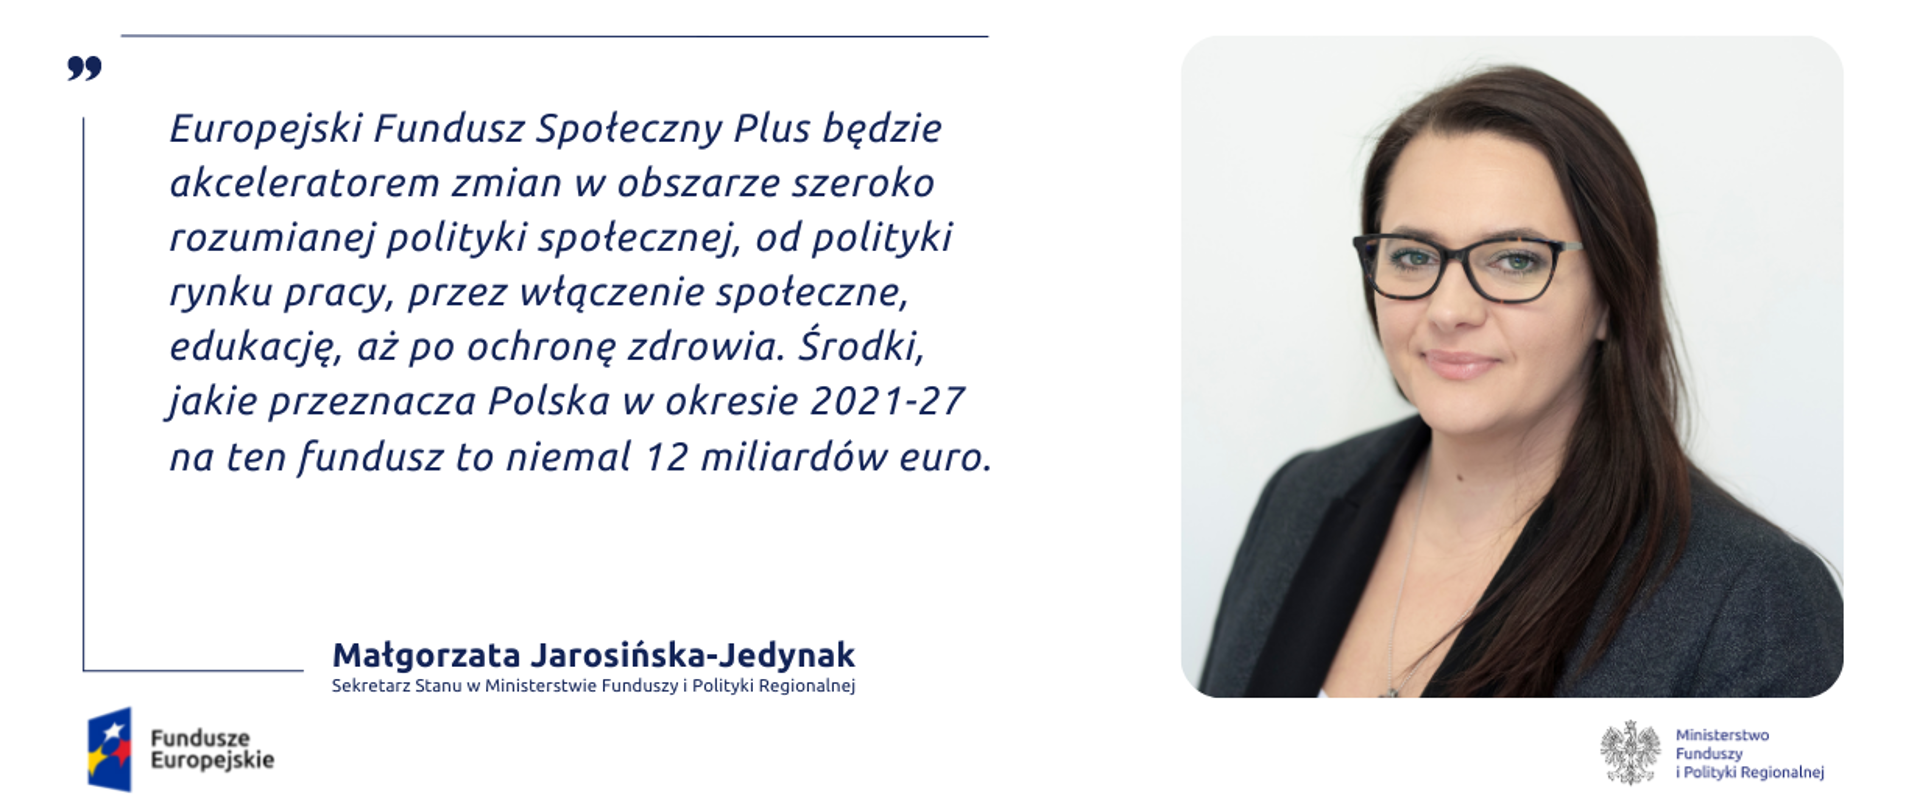 Cytat: Europejski Fundusz Społeczny Plus będzie akceleratorem zmian w obszarze szeroko rozumianej polityki społecznej, od polityki rynku pracy, przez włączenie społeczne, edukację, aż po ochronę zdrowia. Środki, jakie przeznacza Polska w okresie 2021-27 na ten fundusz to niemal 12 miliardów euro .
Z prawej strony zdjęcie portretowe wiceminister Małgorzaty Jarosińskiej-Jedynak